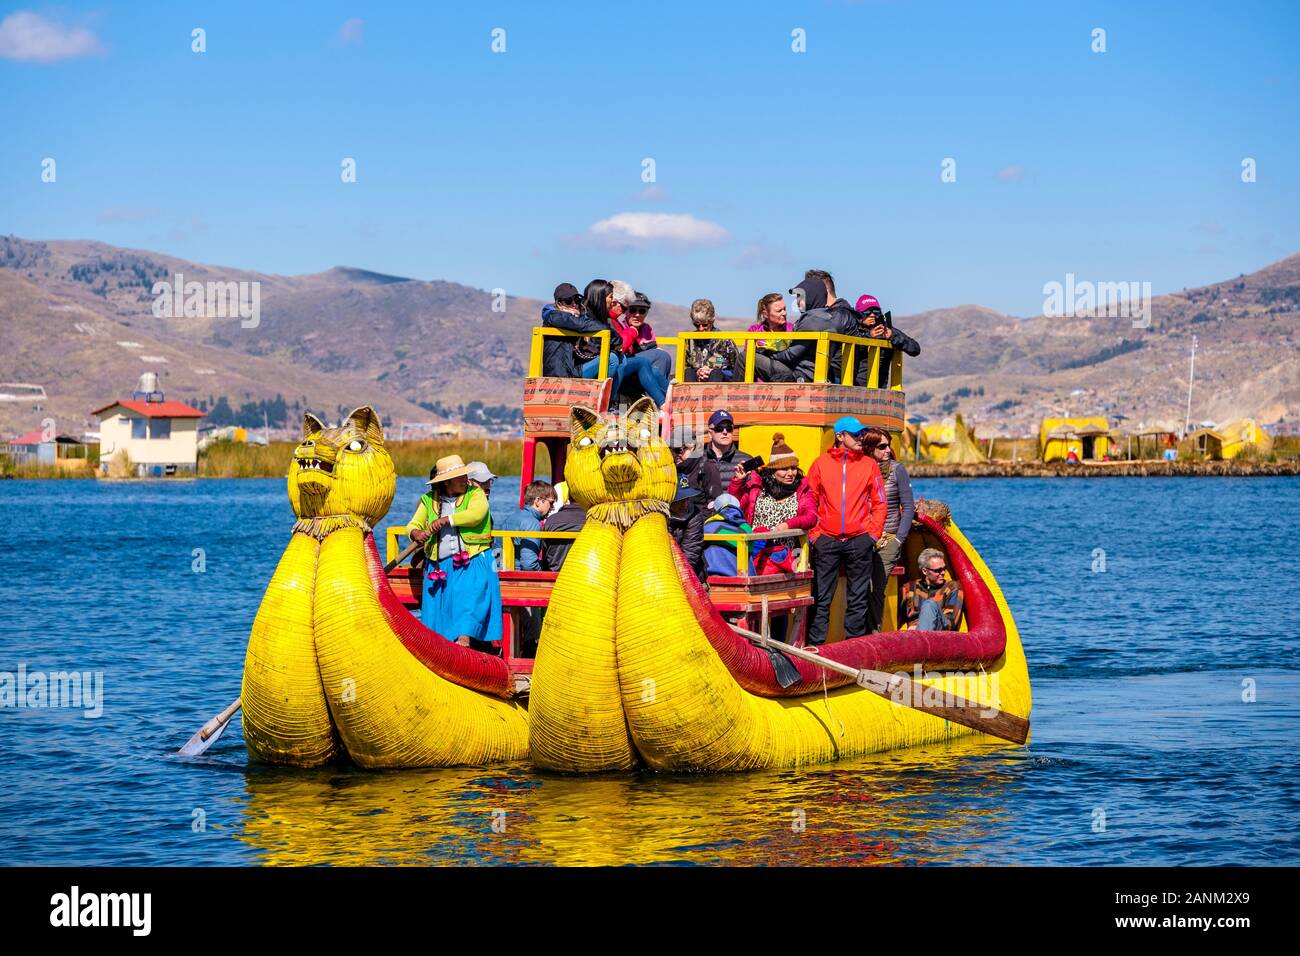 Totora reed boat che trasportano i turisti, Uros isole galleggianti, il lago Titicaca, Puno, Perù Foto Stock